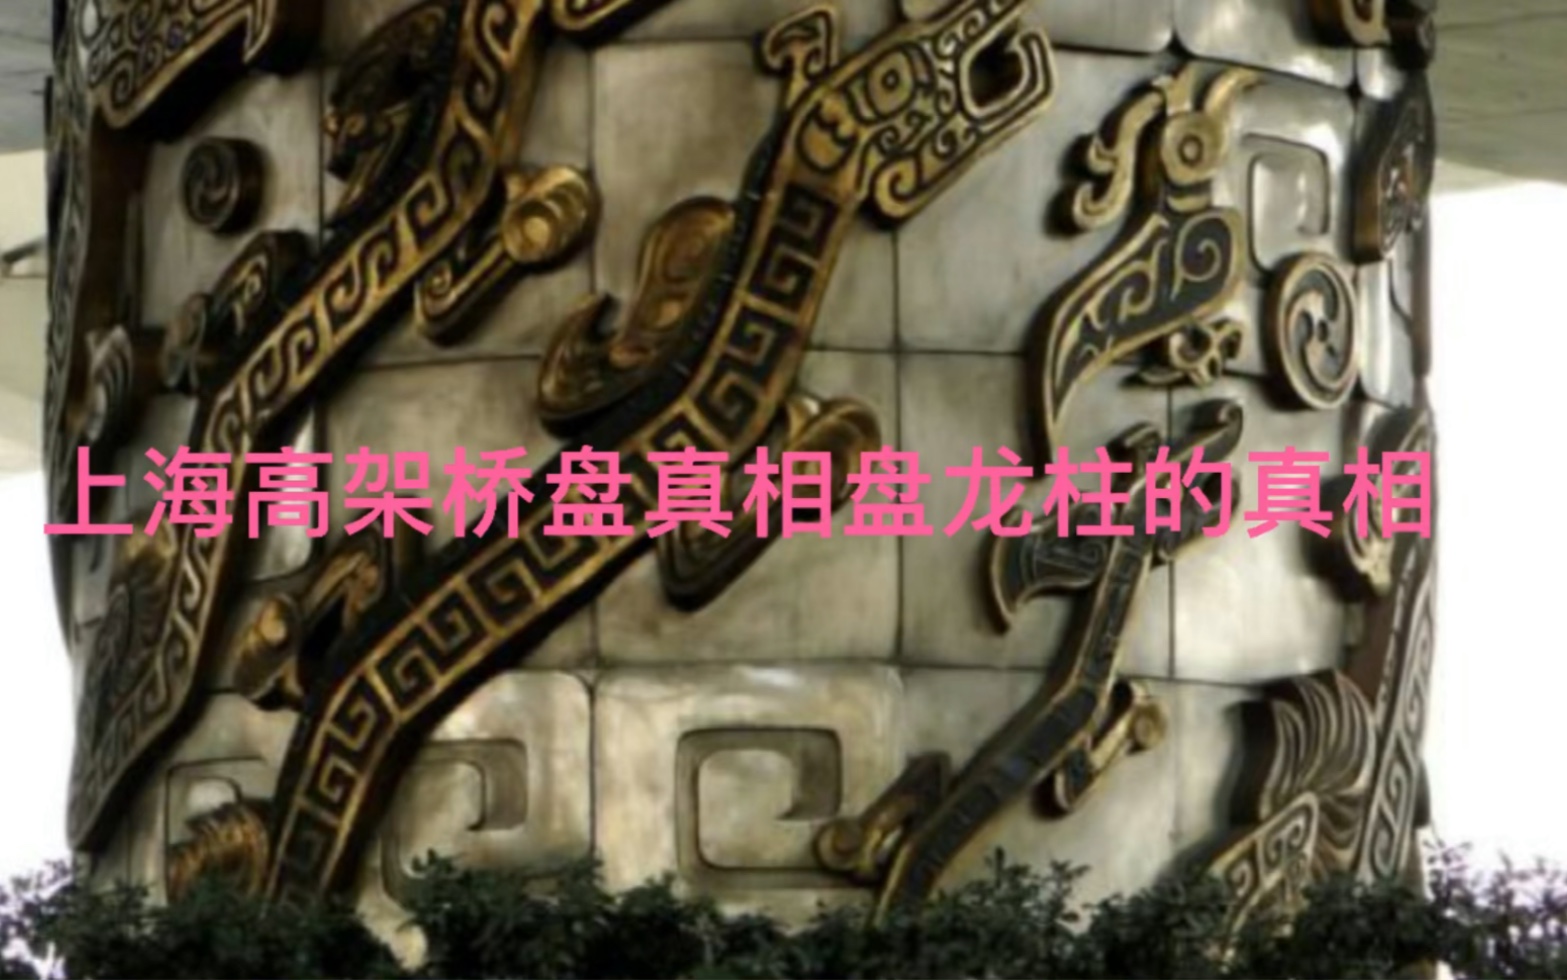 上海高架桥盘龙柱的真相